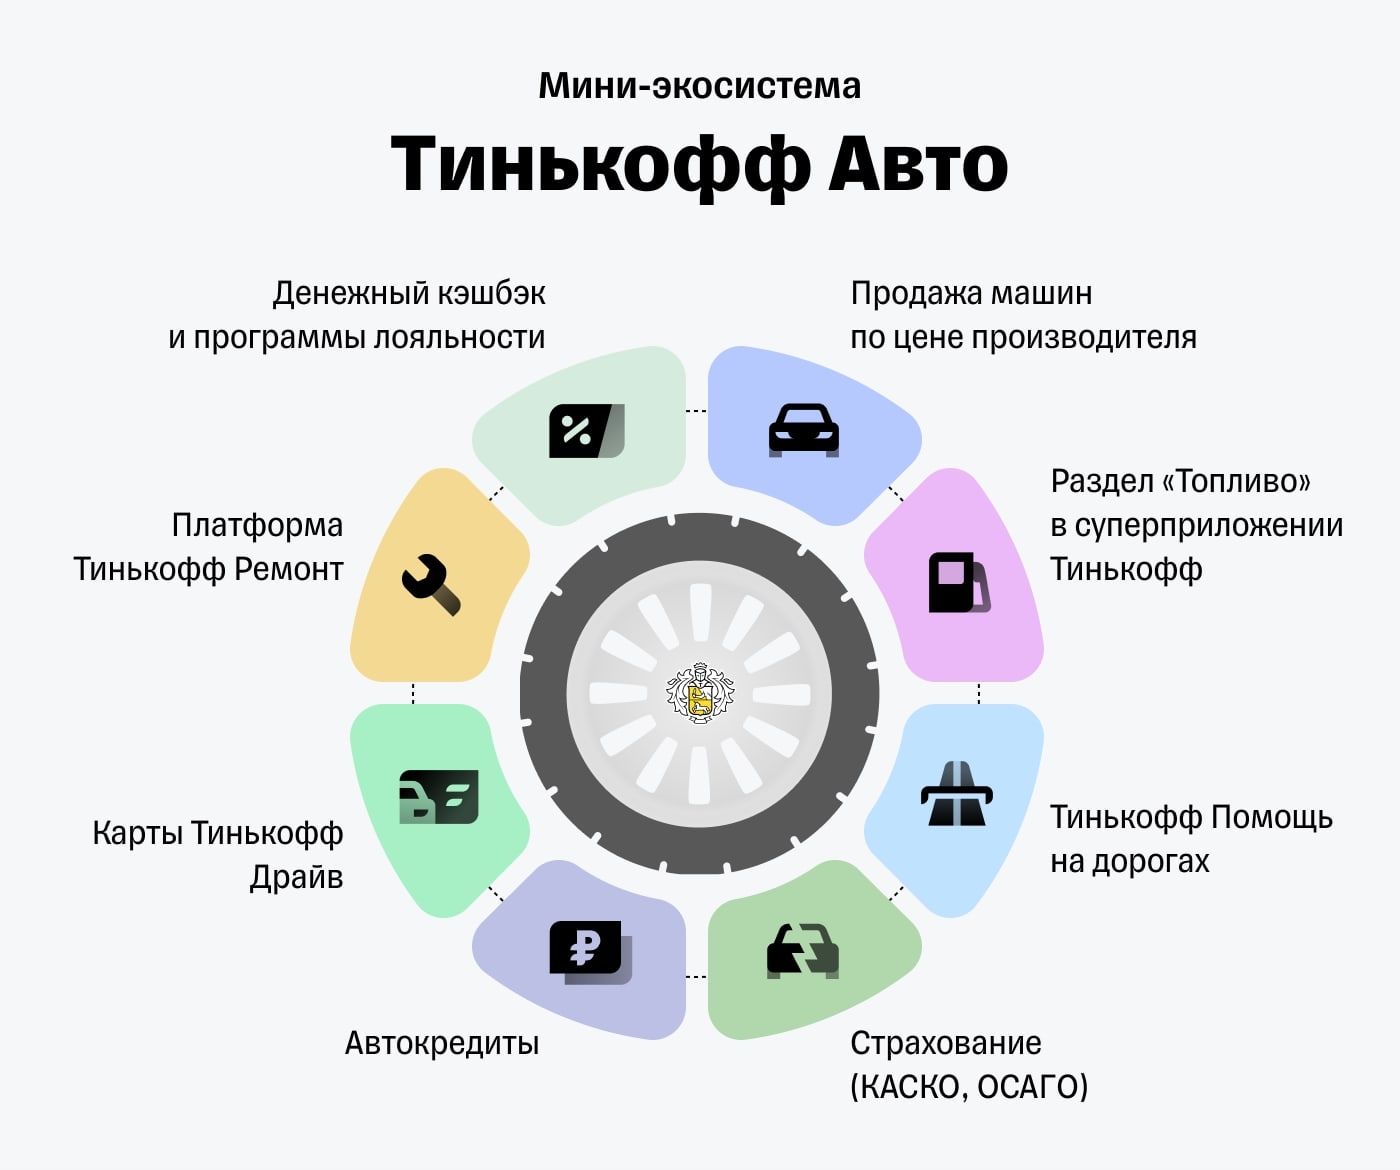 Тинькофф банк запускает платформу по продаже автомобилей - Тинькофф Авто.